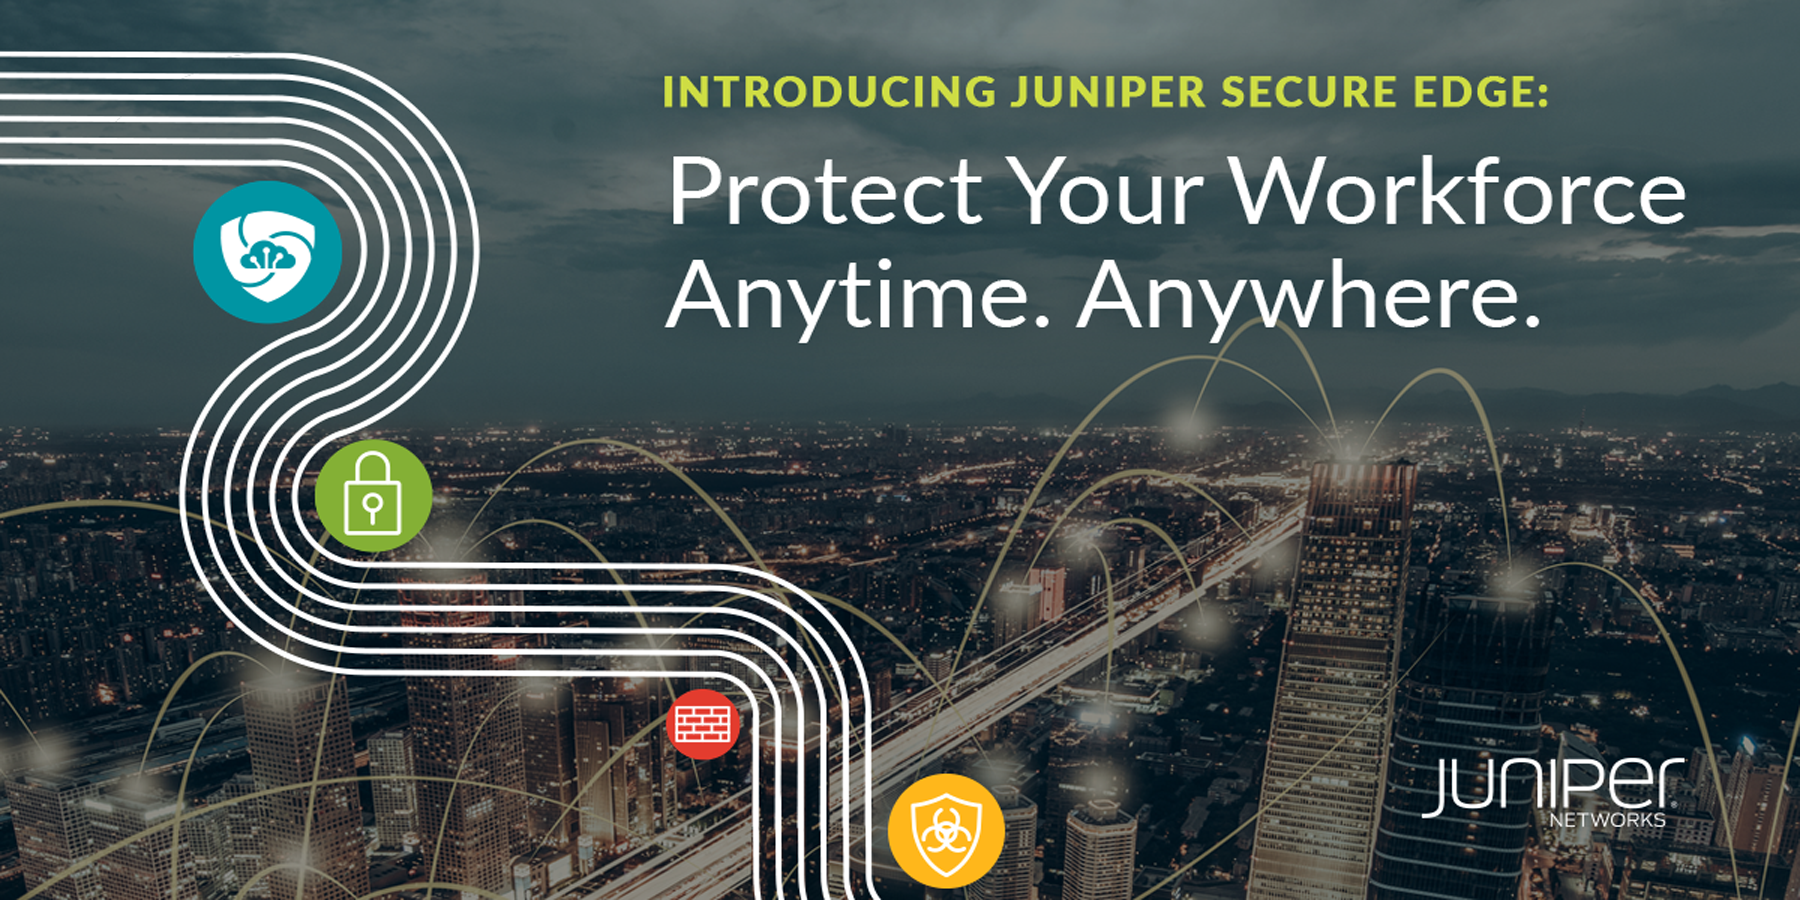 ジュニパーは、新しいクラウド型ファイアウォールサービスでSASEへの移行を促進。いつでもどこでも従業員の通信を保護